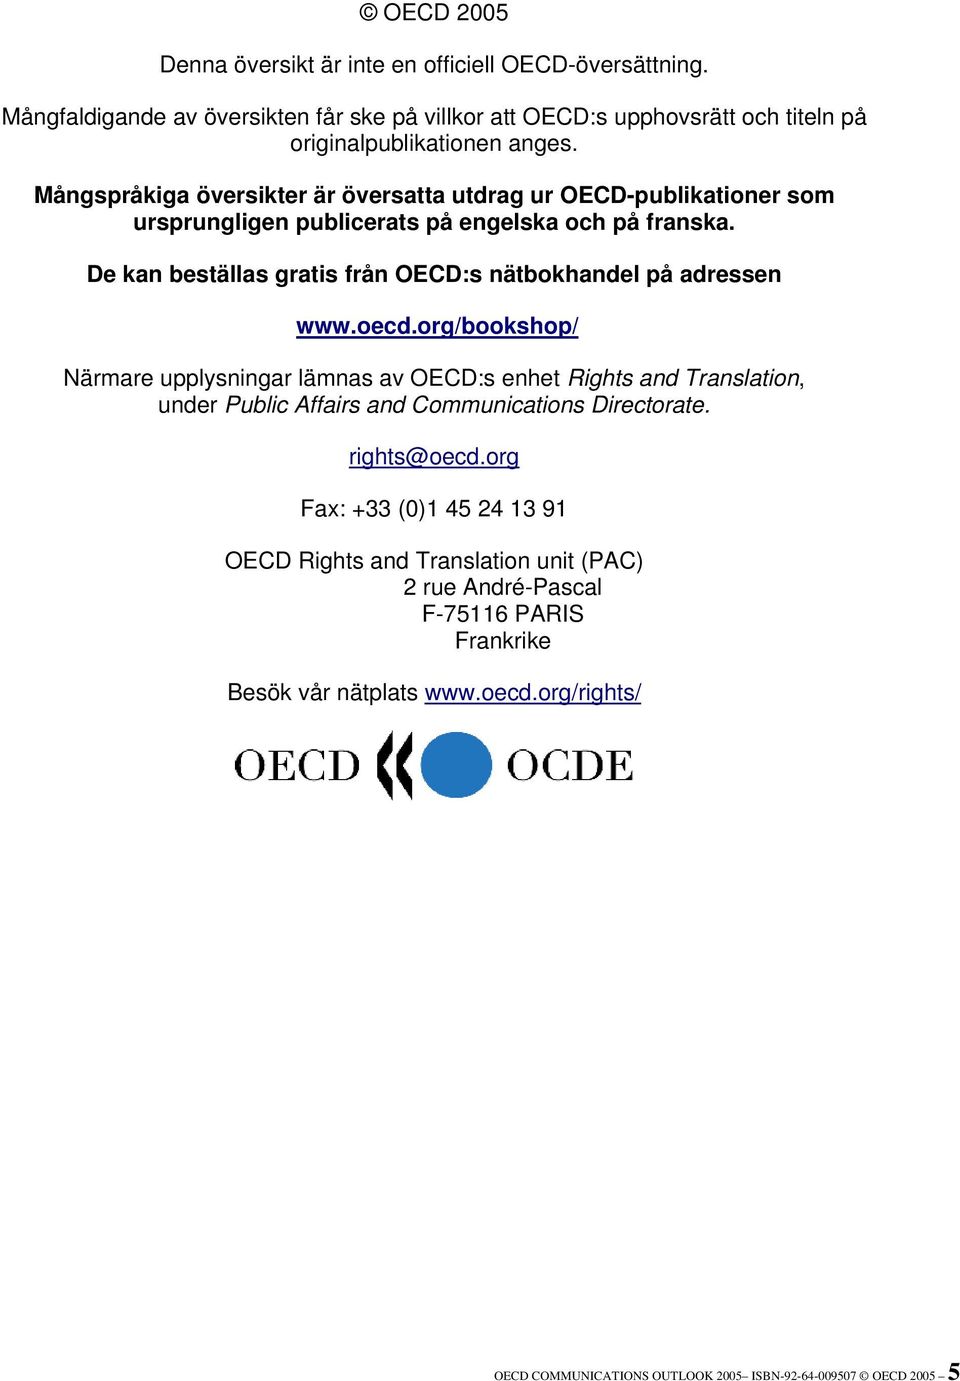 De kan beställas gratis från OECD:s nätbokhandel på adressen www.oecd.